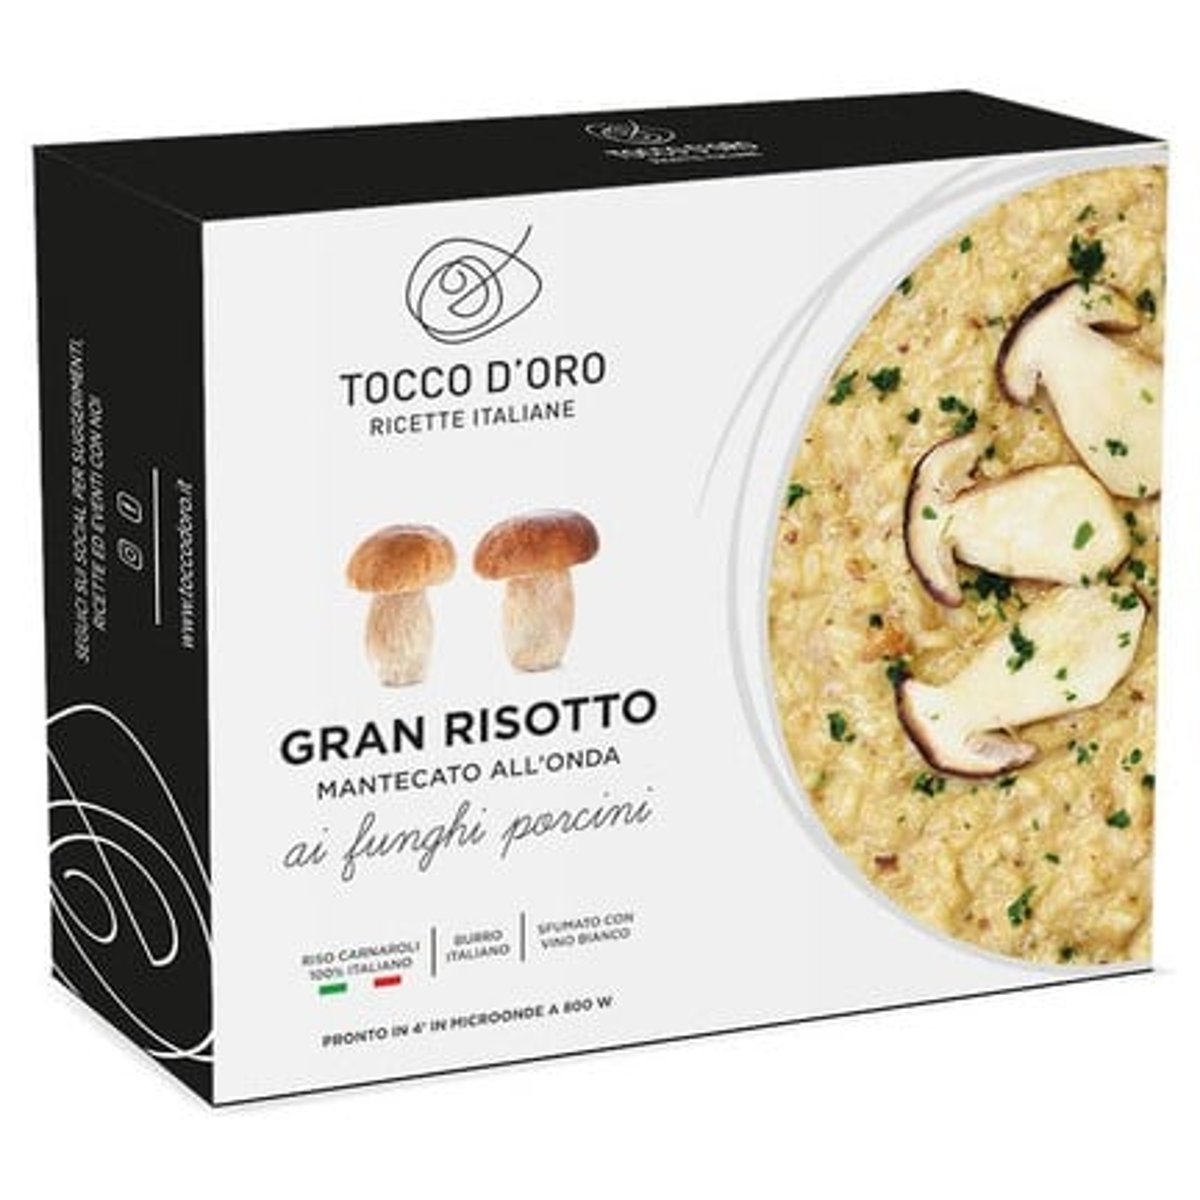 Tocco D'Oro Gran risotto s houbami porcini